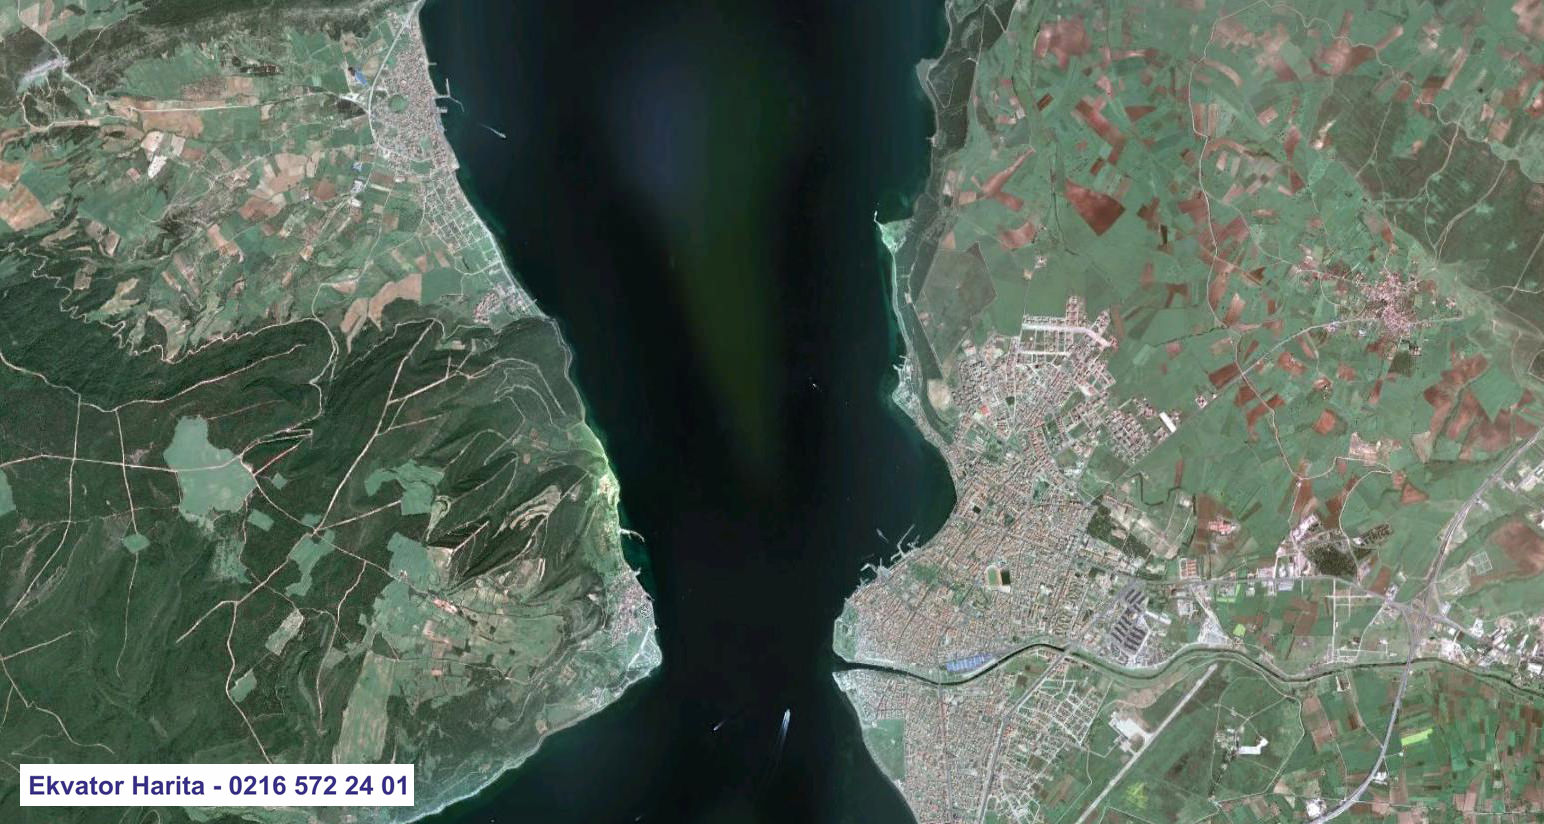 Çanakkale Uydu Haritası Örnek Fotoğrafı